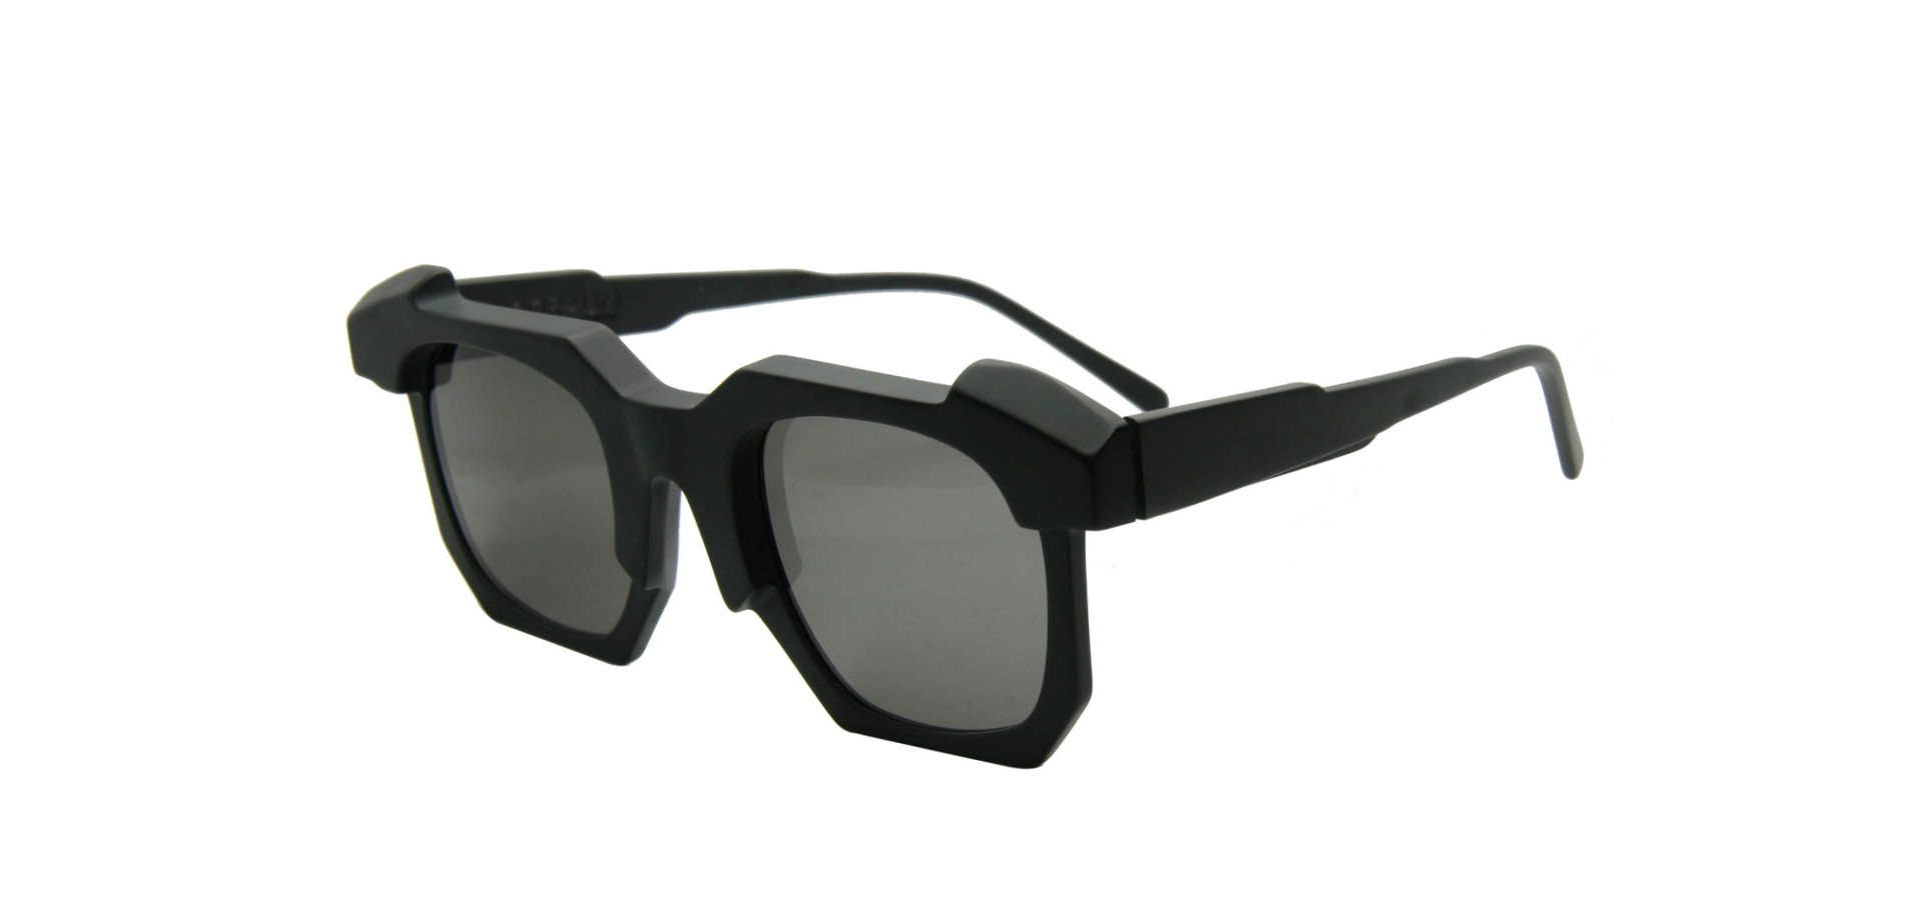 Sončna očala Kuboraum K2 5024 BB SMOKE: Velikost: 50/24, Spol: unisex, Material: acetat